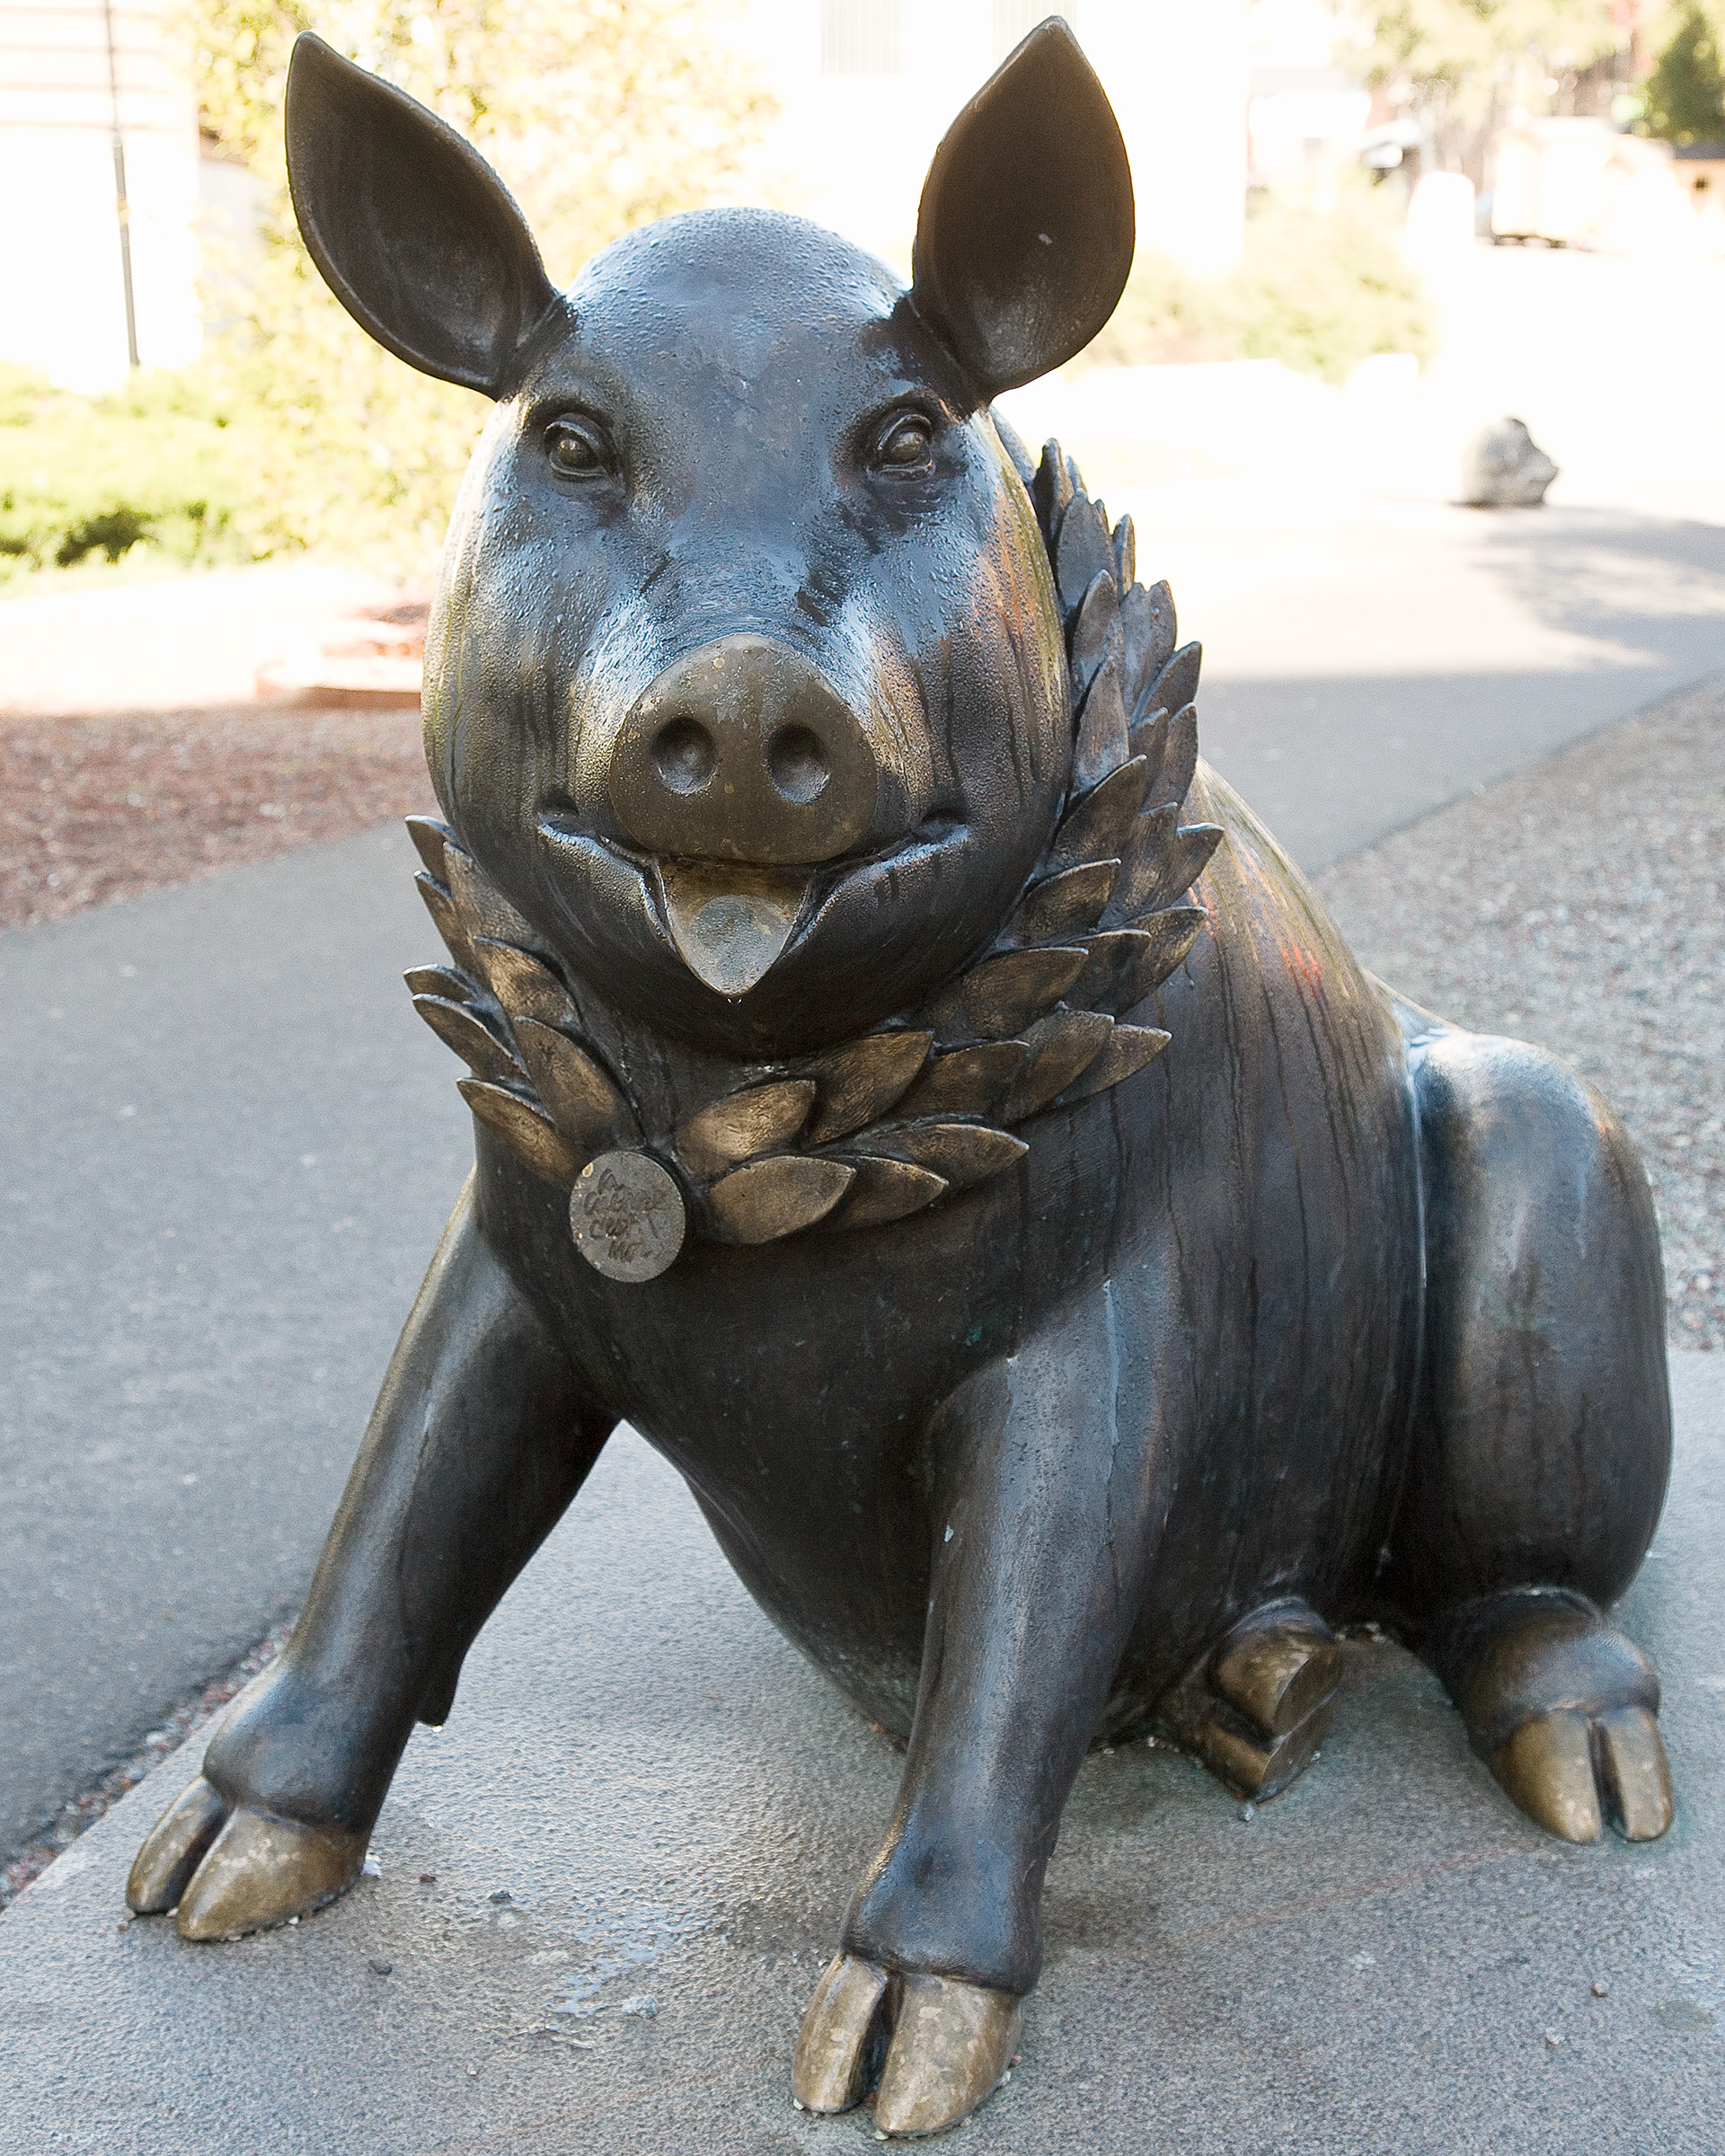 En skulptur av en gris i brons sitter på asfalten och ler.